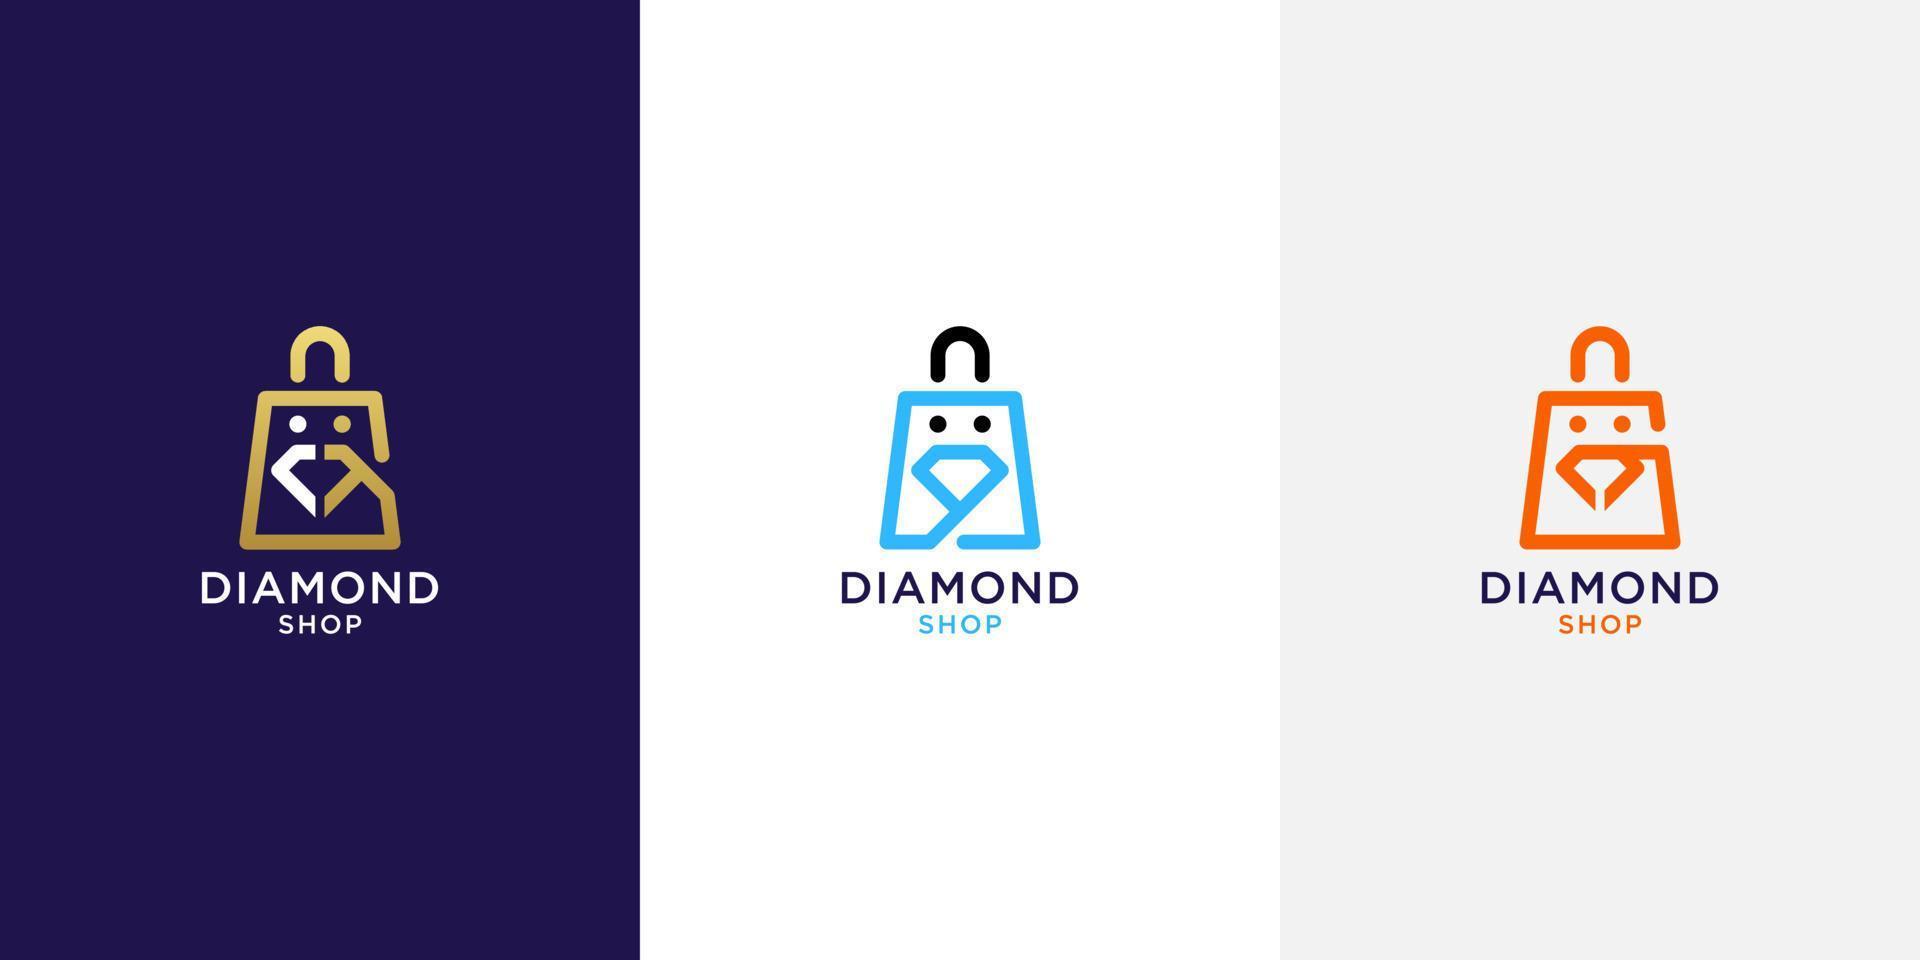 Diamond logo with shopping bag design vector